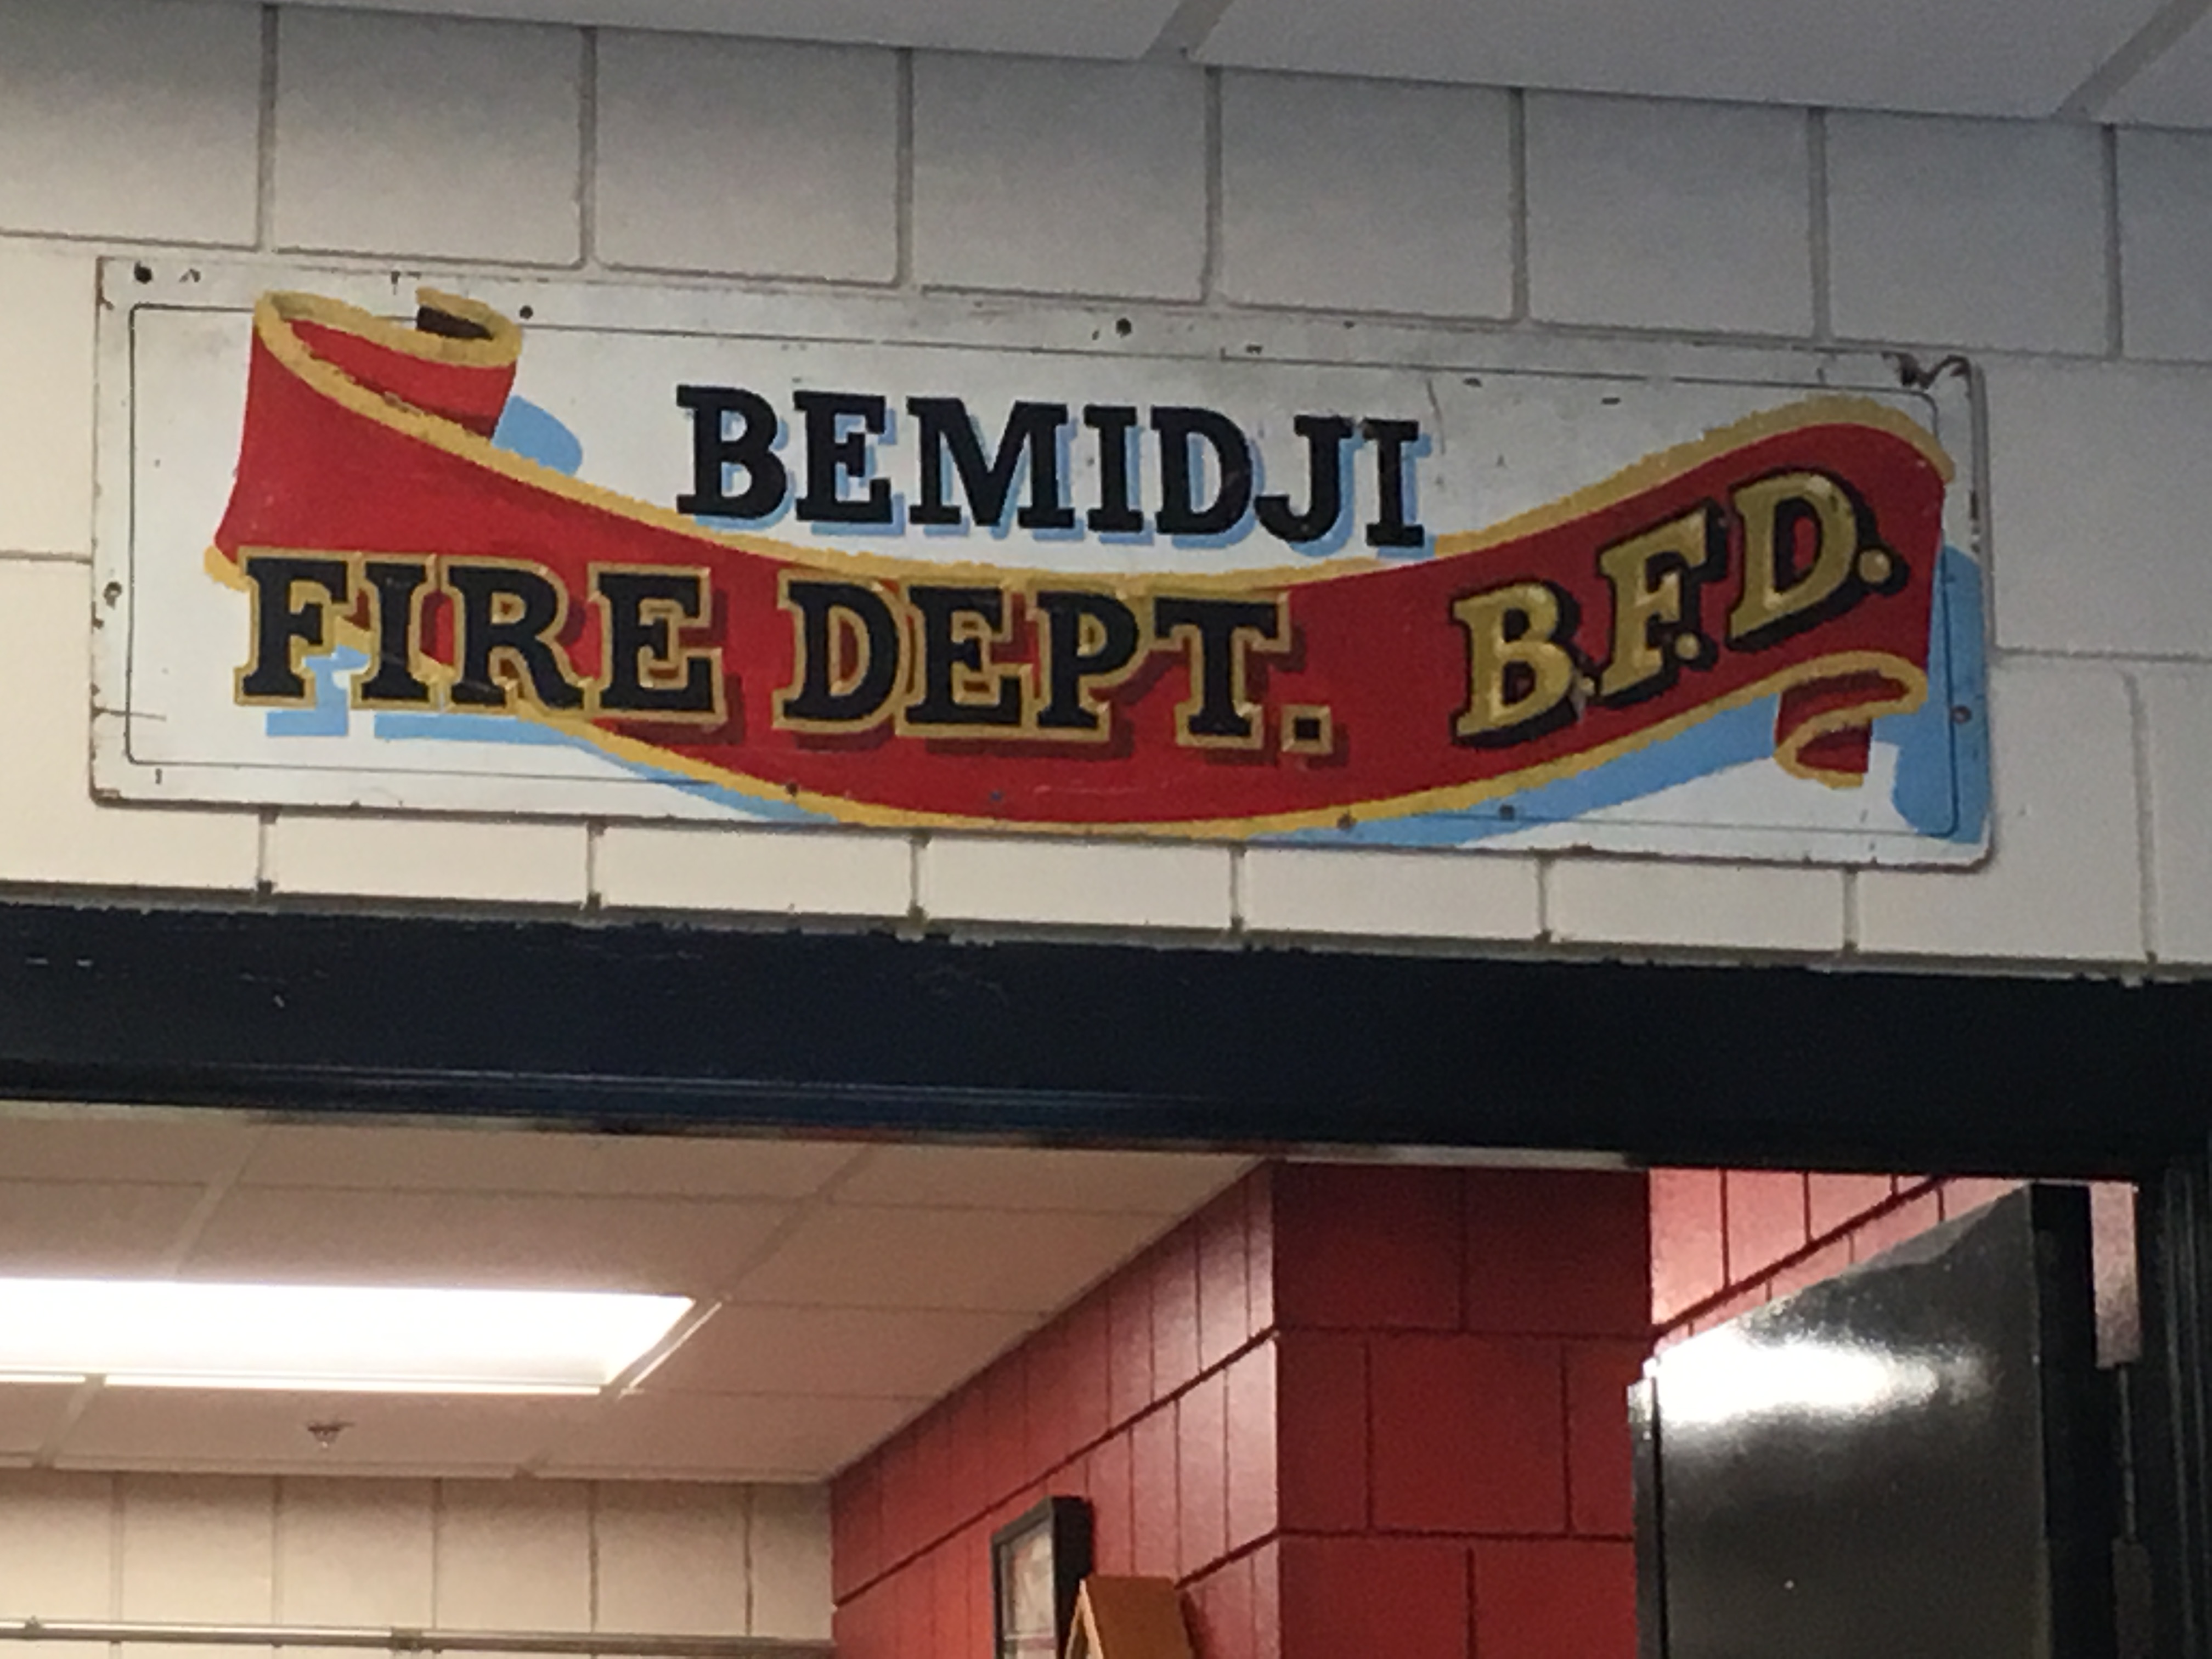 Bemidji Fire Dept